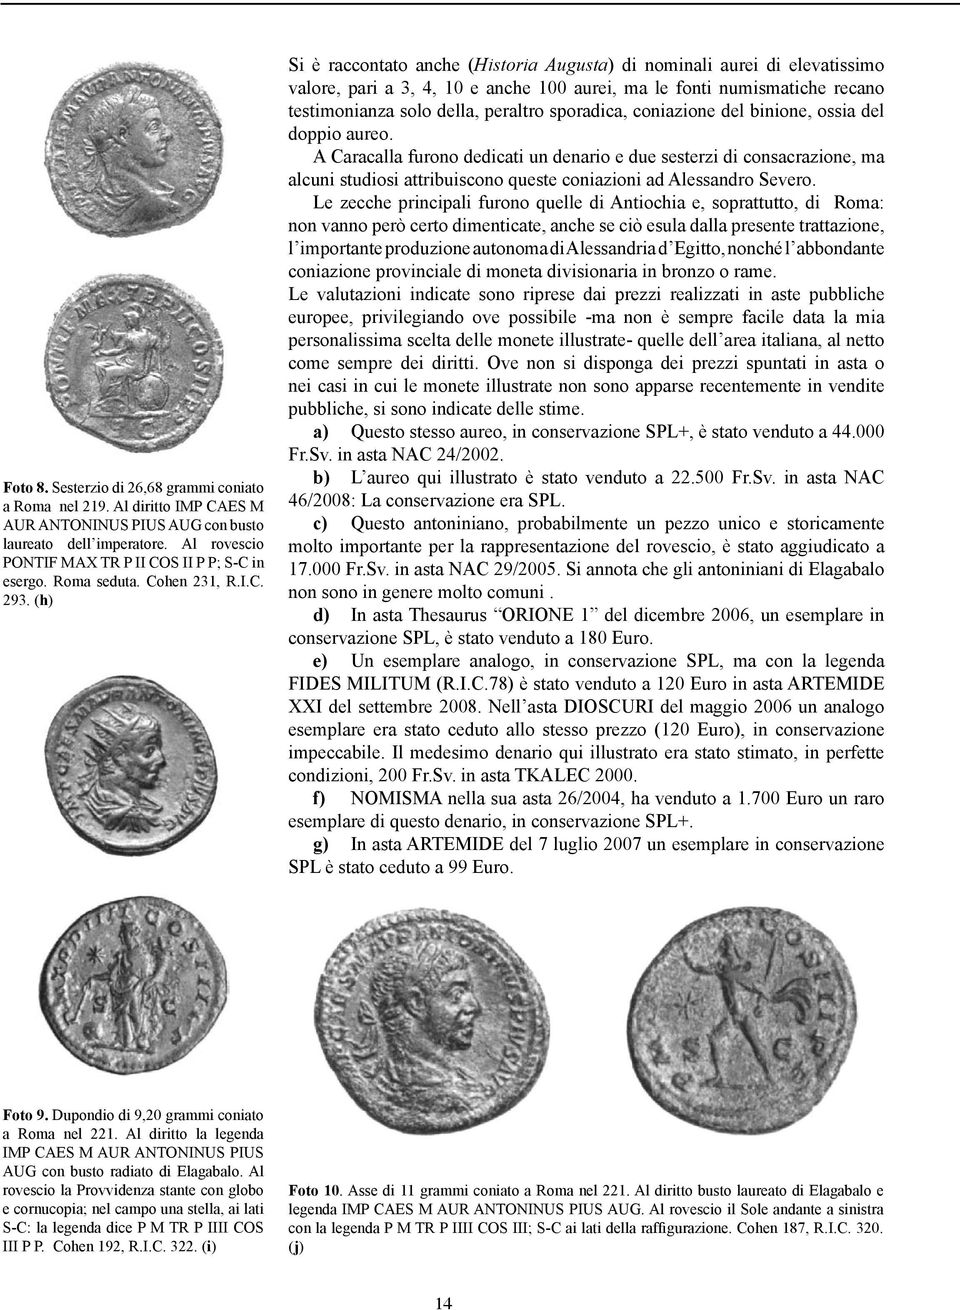 (h) Si è raccontato anche (Historia Augusta) di nominali aurei di elevatissimo valore, pari a 3, 4, 10 e anche 100 aurei, ma le fonti numismatiche recano testimonianza solo della, peraltro sporadica,